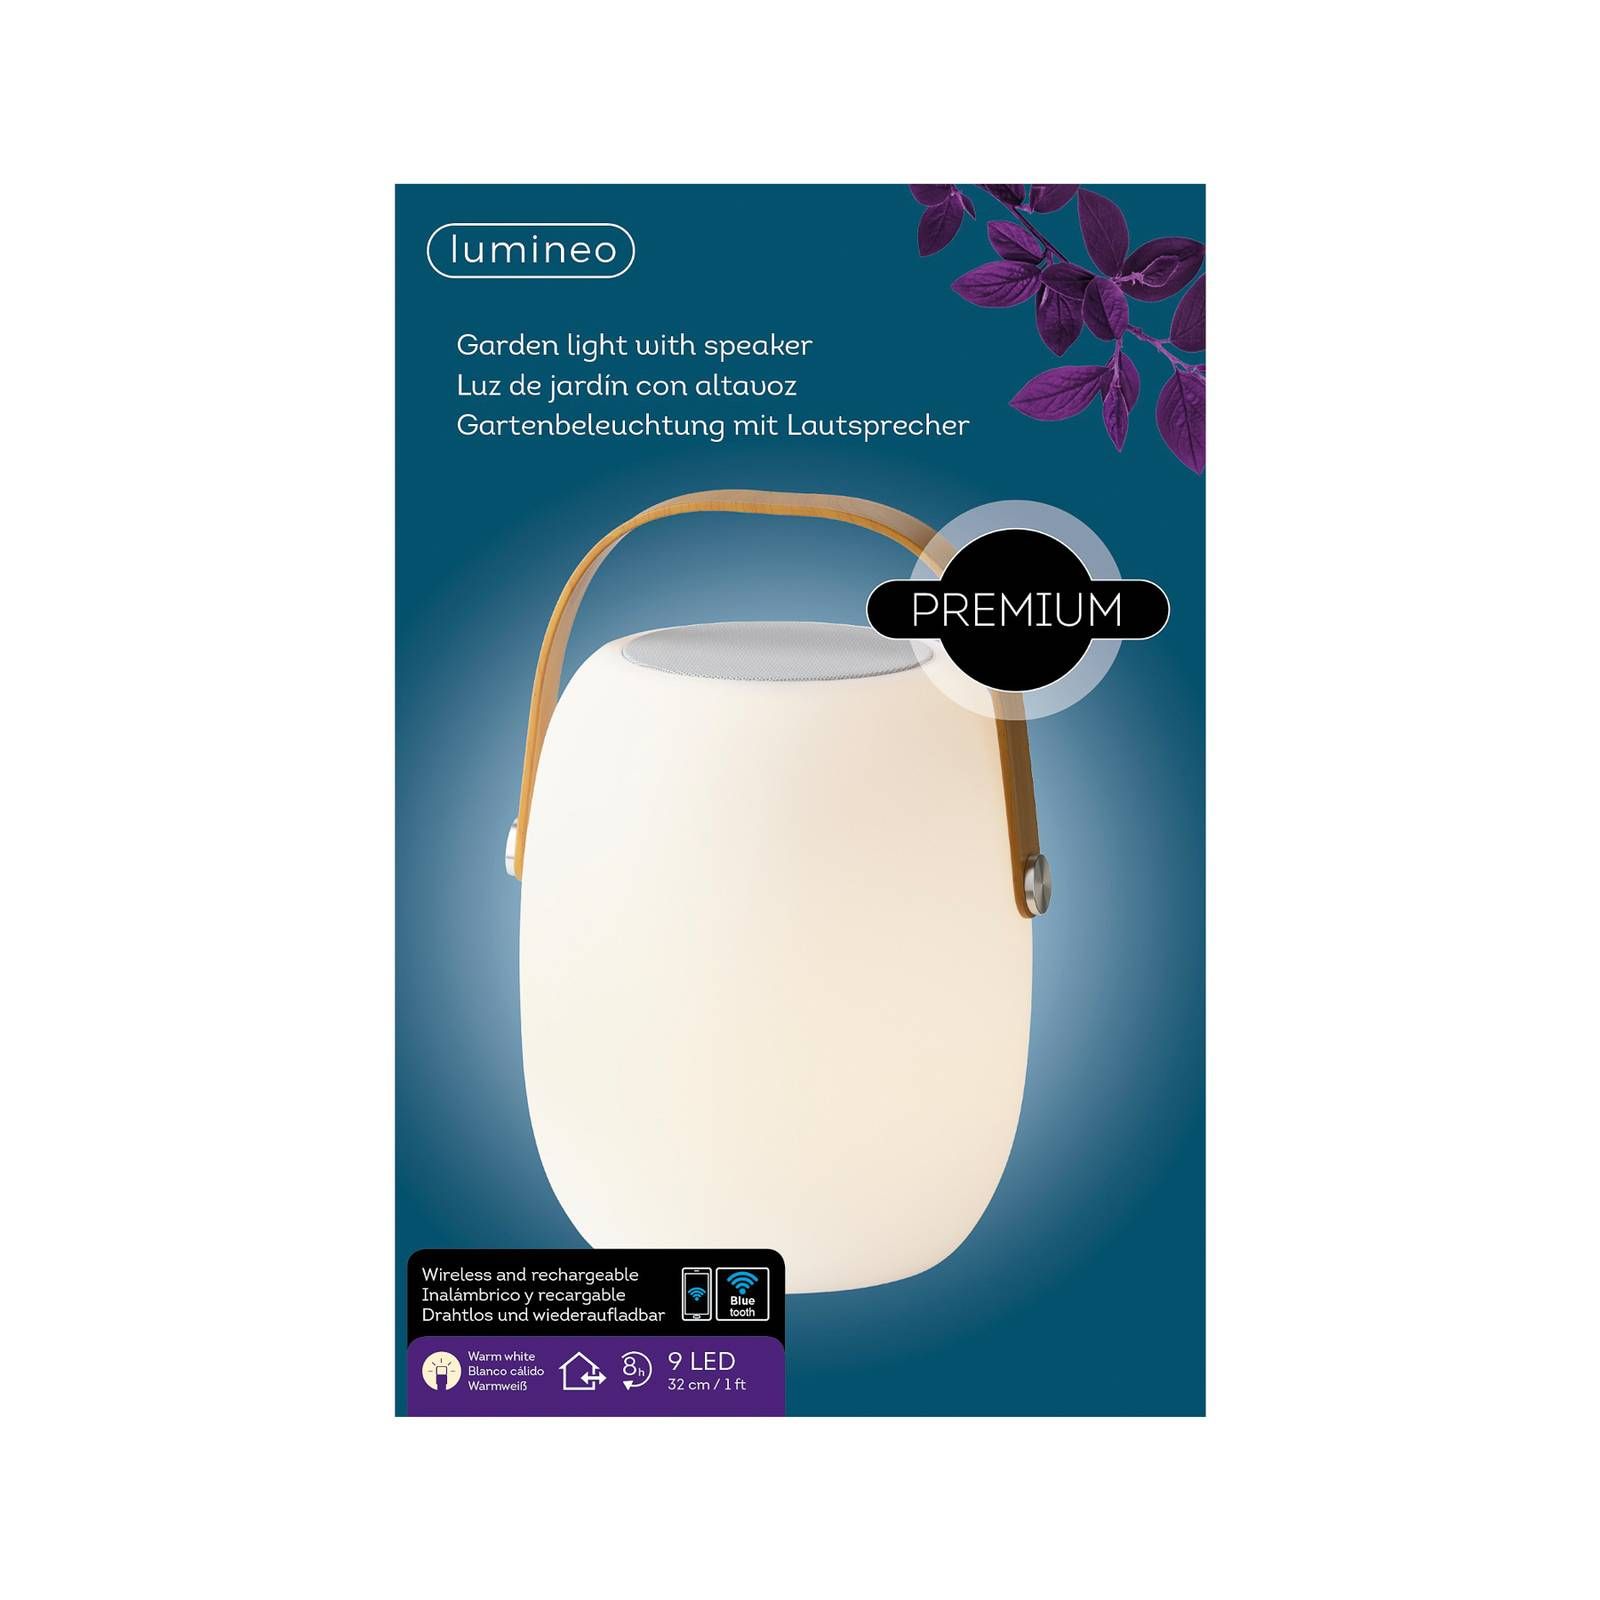 Kaemingk Stolová LED lampa 895196 reproduktor, teplá biela, polyetylén, 1.6W, K: 32cm